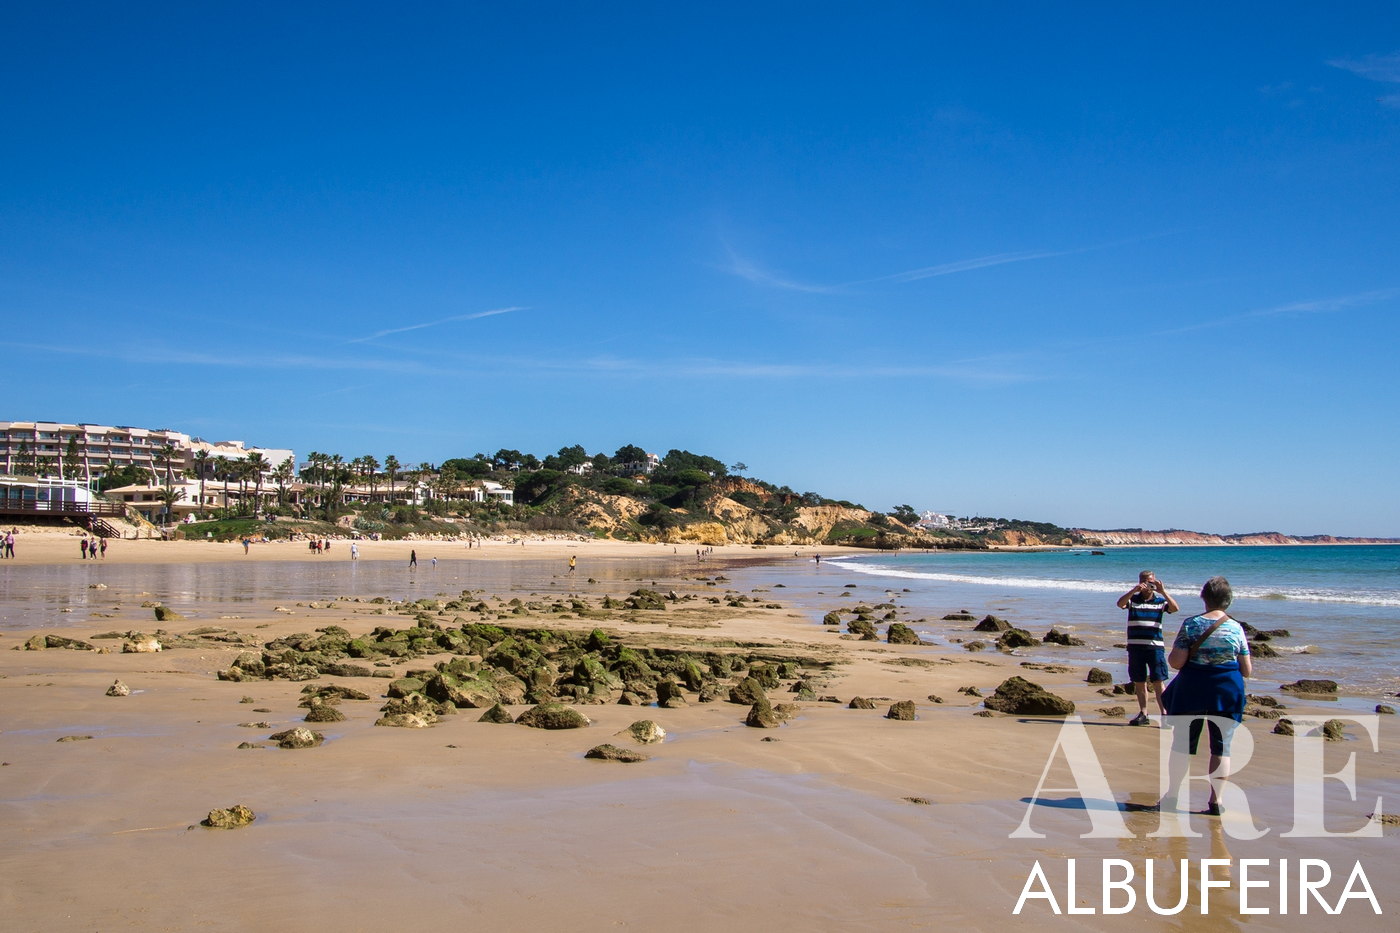 vista de la playa de Santa Eulalia con la lejana Praia da Falésia visible en el horizonte. La marea baja revela llamativas rocas verdes adornadas con limas, que contrastan con el largo tramo de playa de arena.